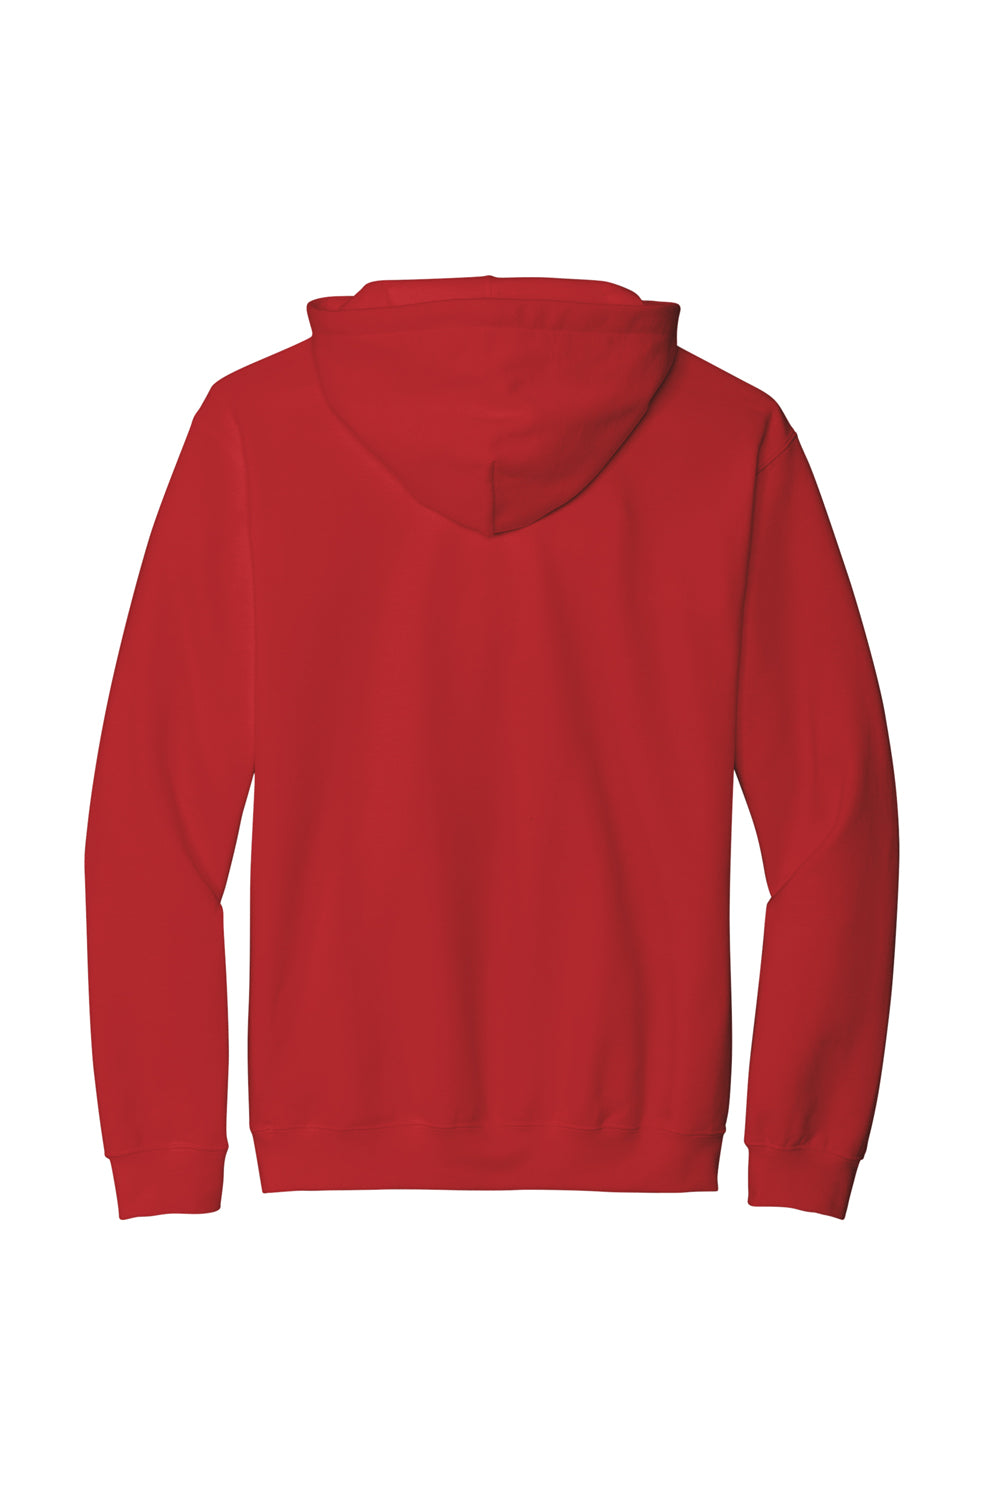 Gildan SF500 Softstyle Hooded Sweatshirt Hoodie Red Flat Back